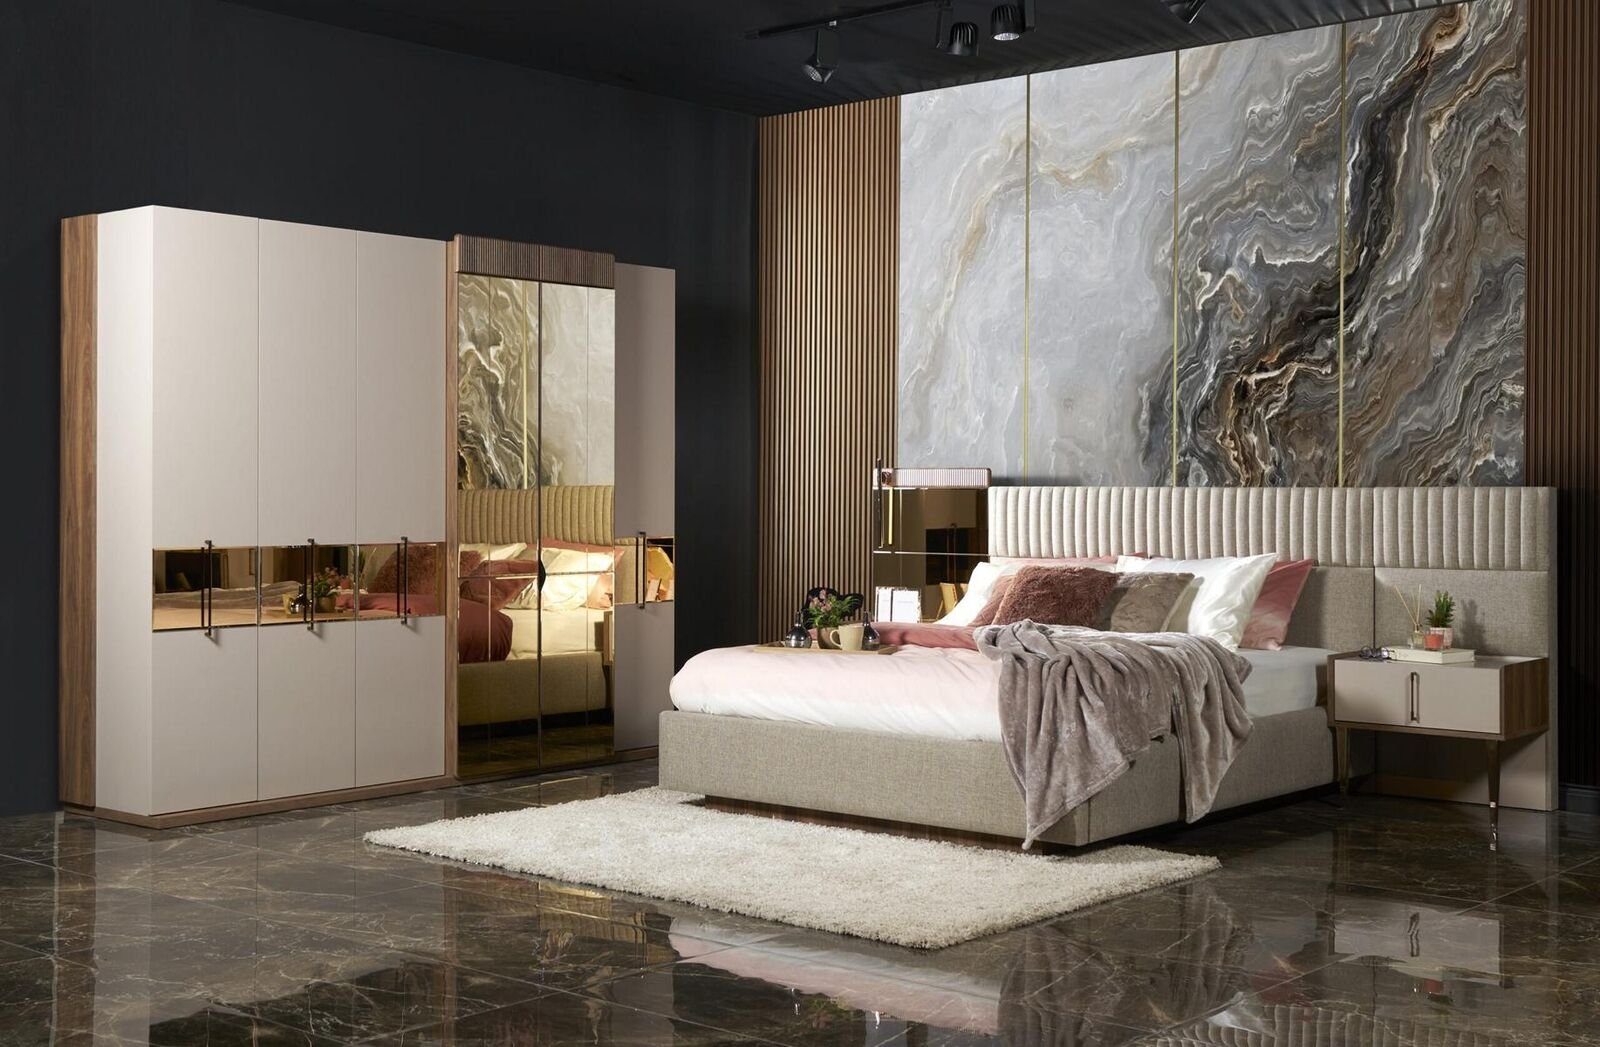 (Kleiderschrank) Schlafzimmer Made Europe Kleiderschrank In Neu Modern Stil Kleiderschrank Schrank Möbel Luxus JVmoebel Design